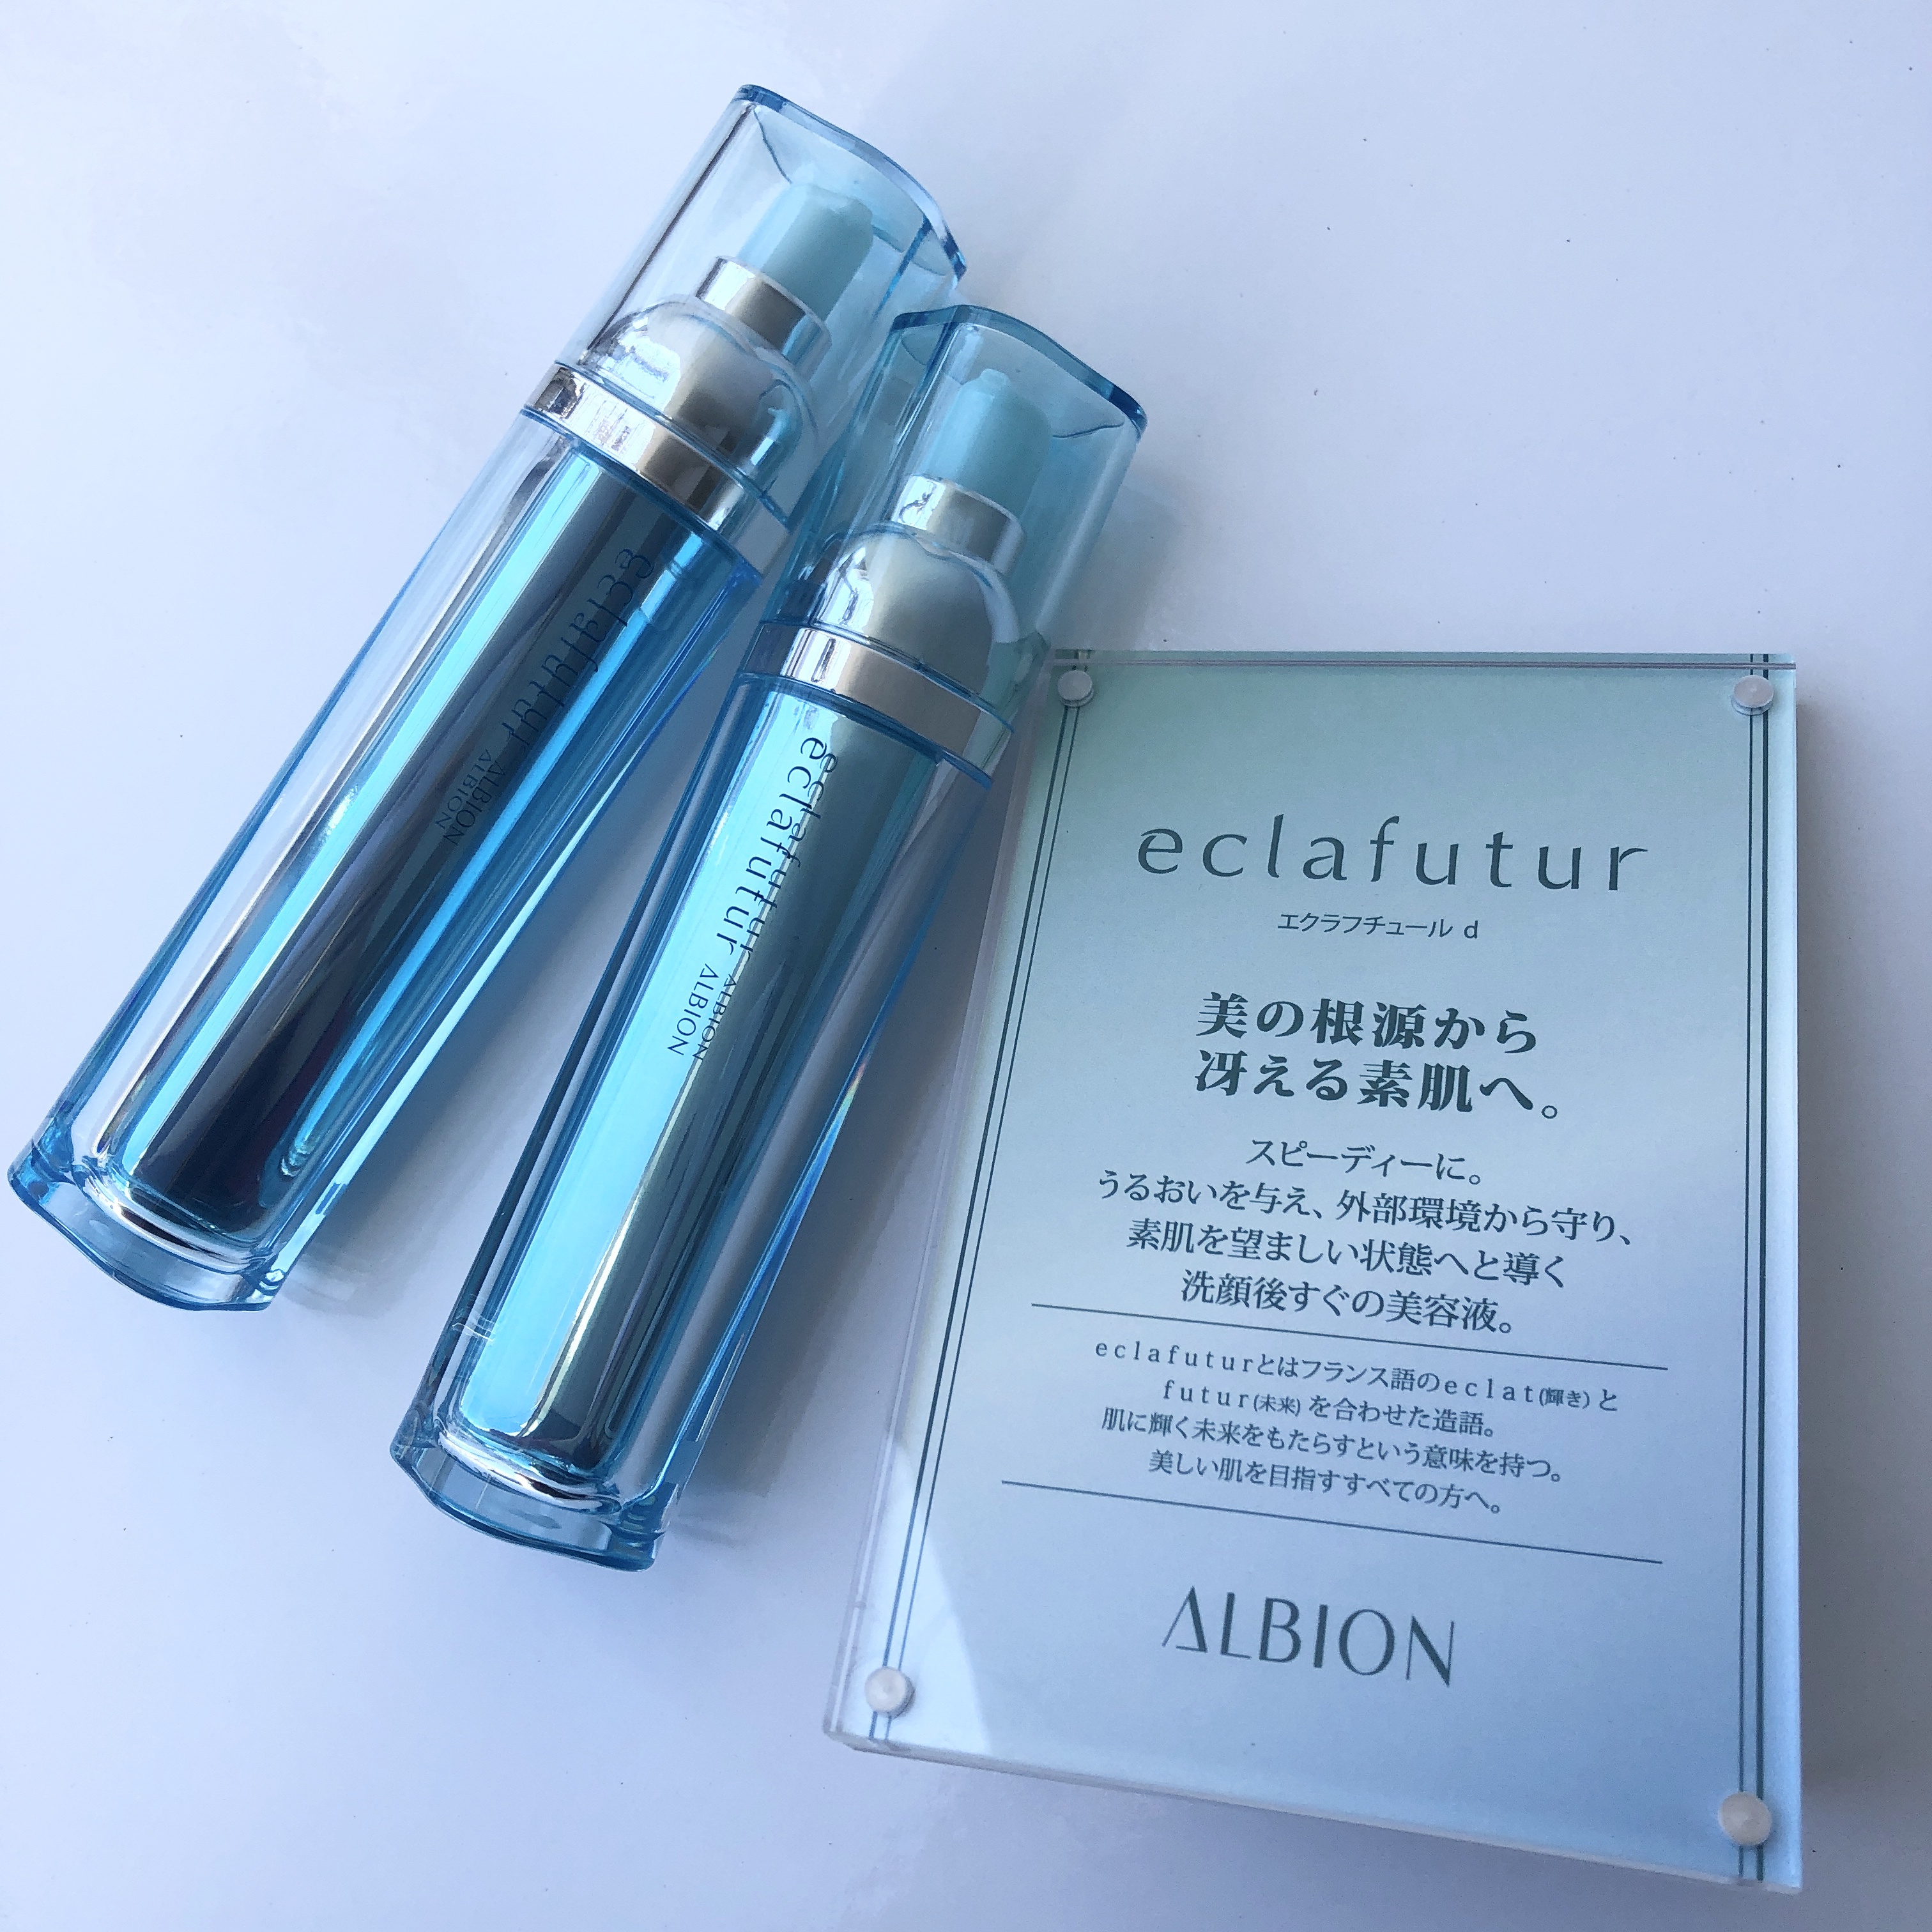 アルビオン エクラフチュール サンプル - 基礎化粧品